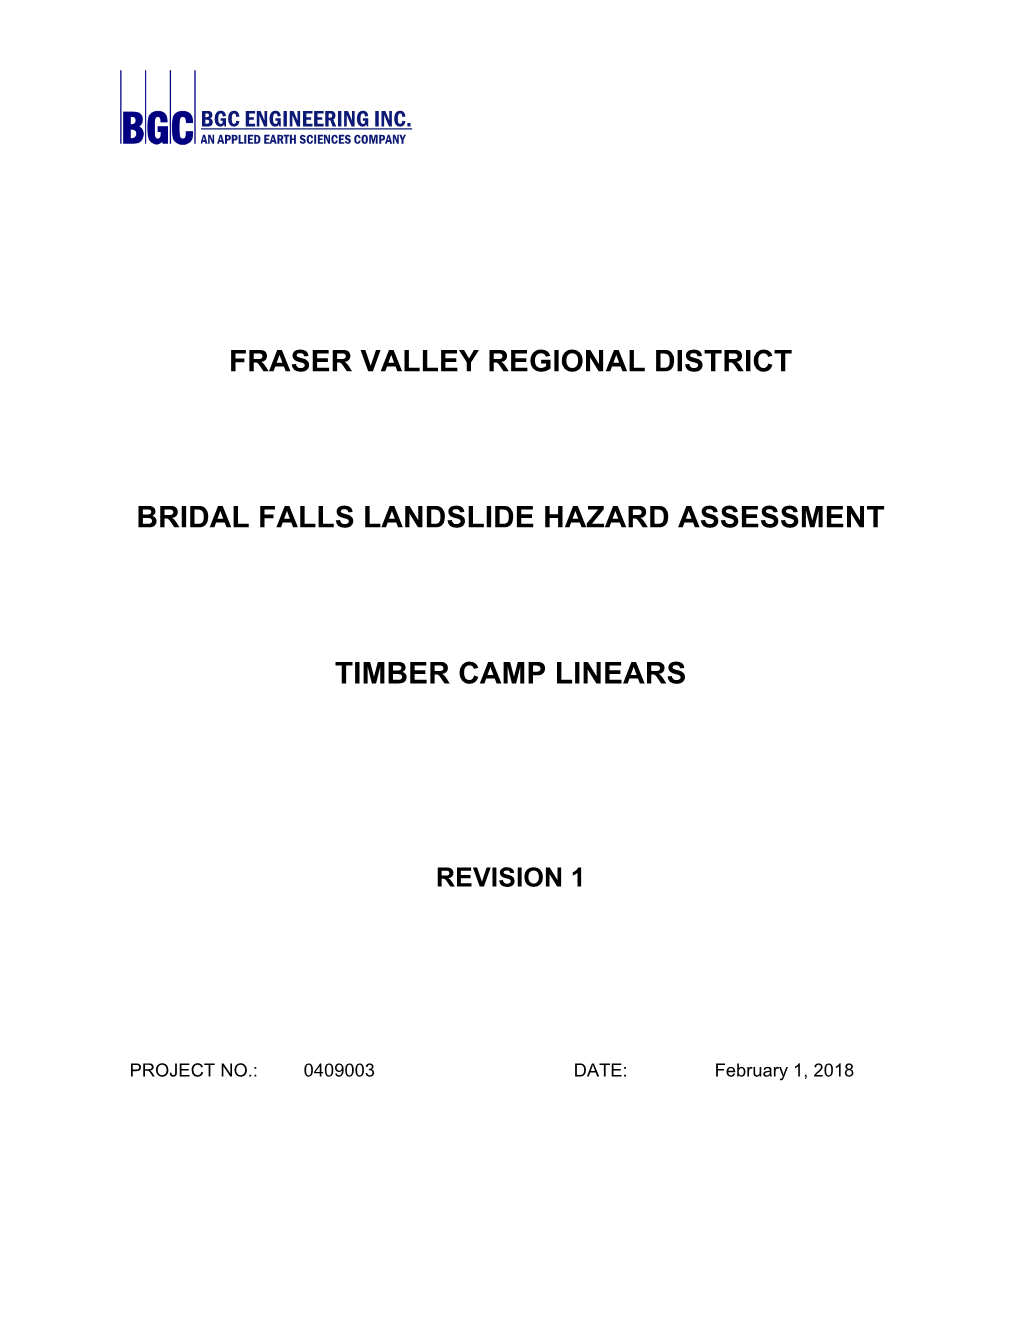 Fraser Valley Regional District Bridal Falls Landslide Hazard Assessment